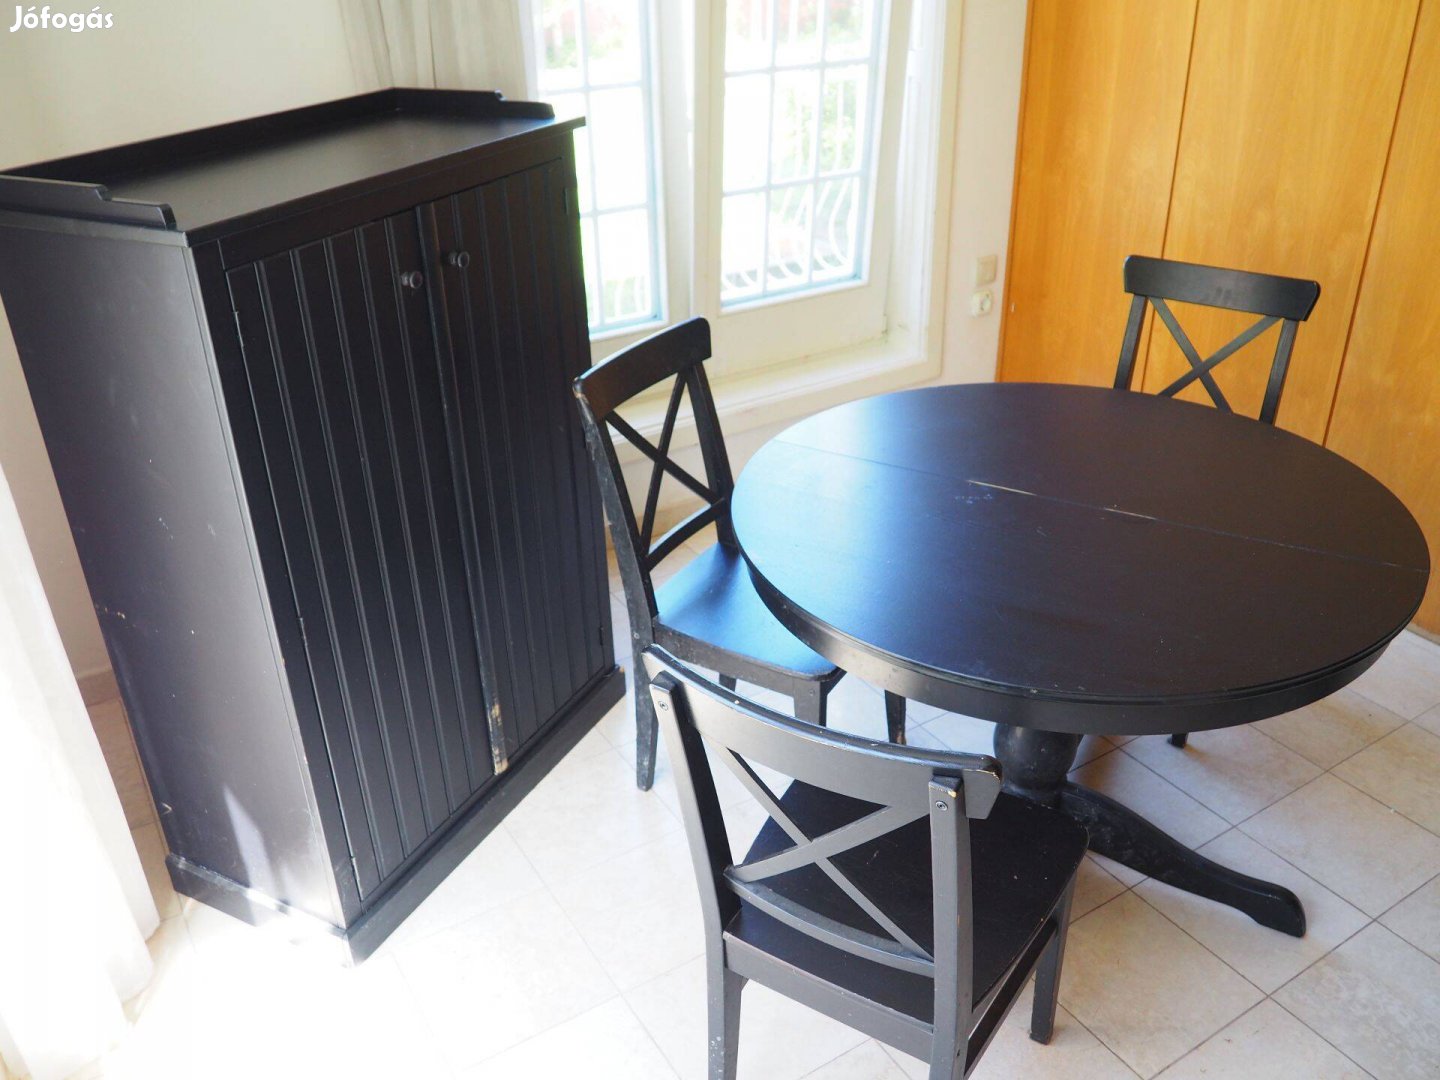 Konyhabútor asztal, szekrény, székek / Kitchen table, cupboard, chairs